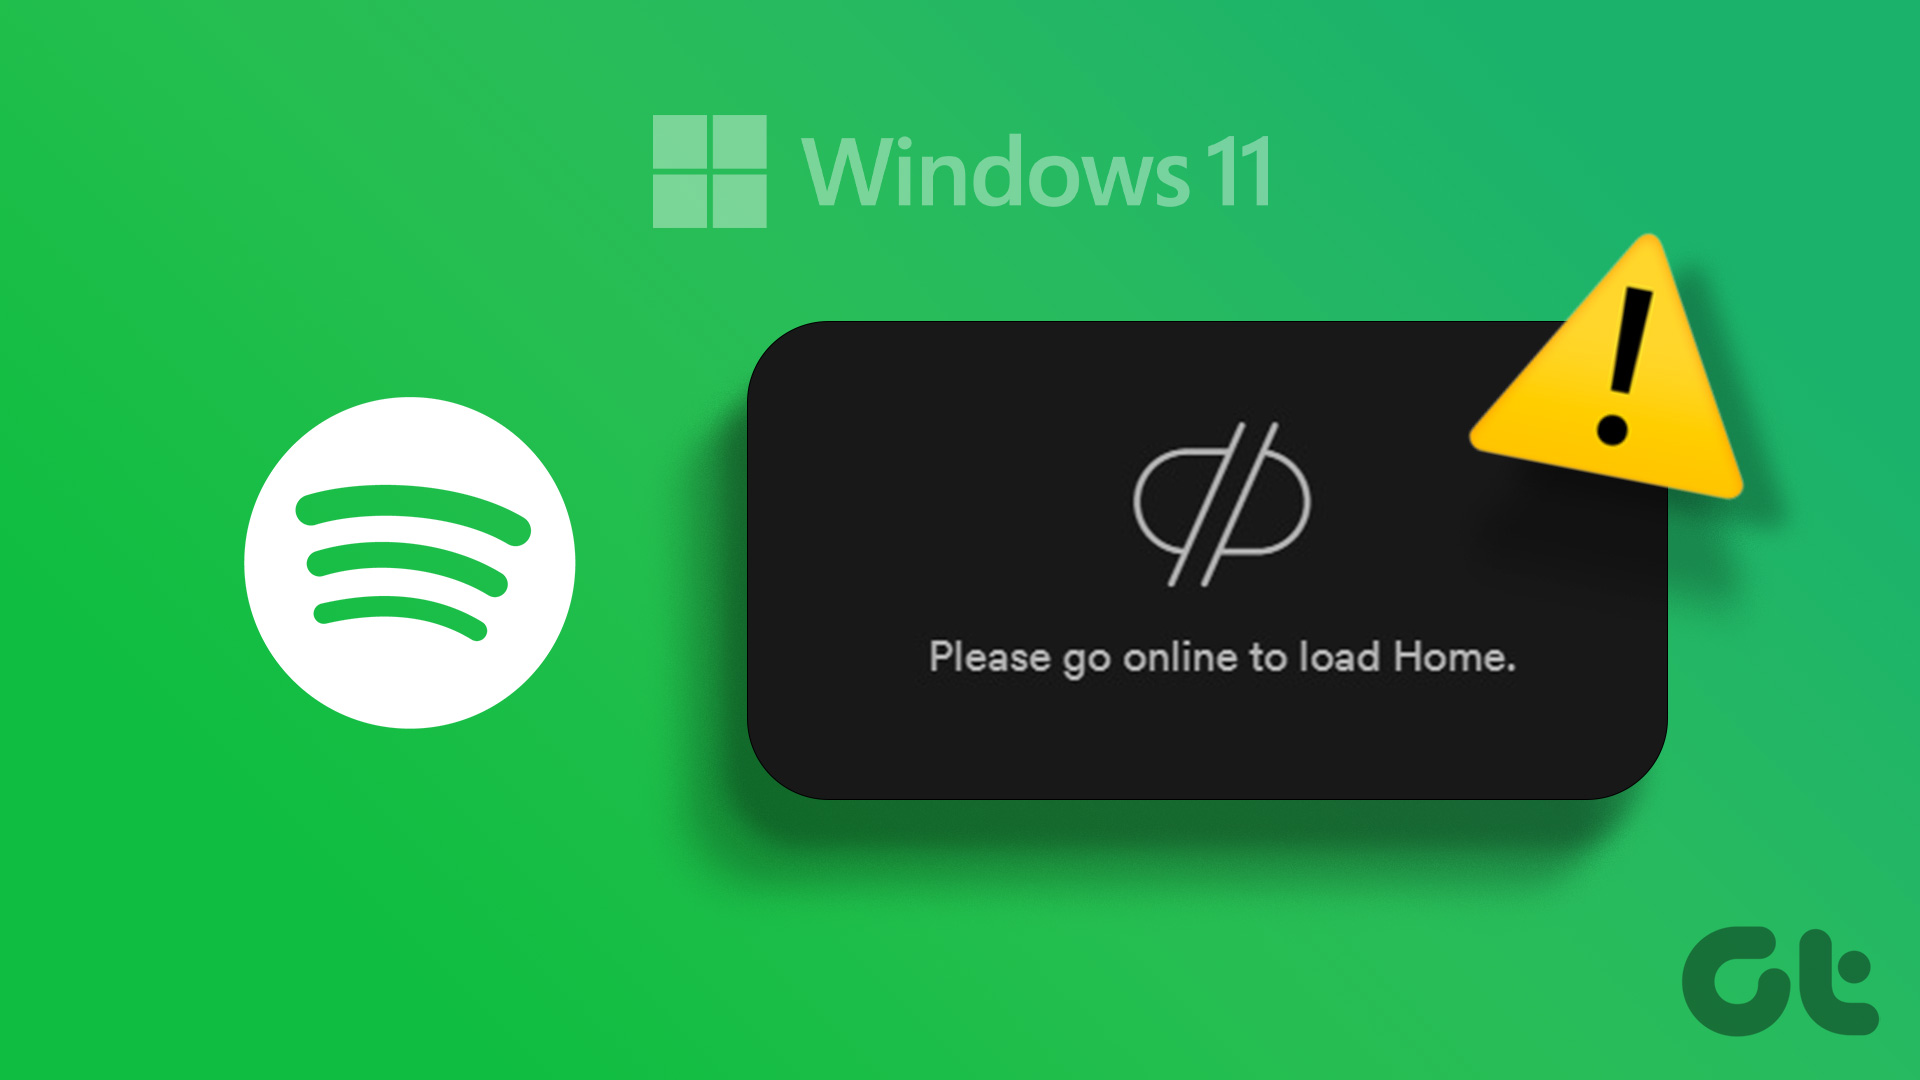 Aplicativo não está respondendo: O Spotify pode parar de responder ou travar ao ser usado no Windows 10.
Problemas de conexão: O aplicativo pode apresentar dificuldades para se conectar à internet ou para reproduzir músicas.